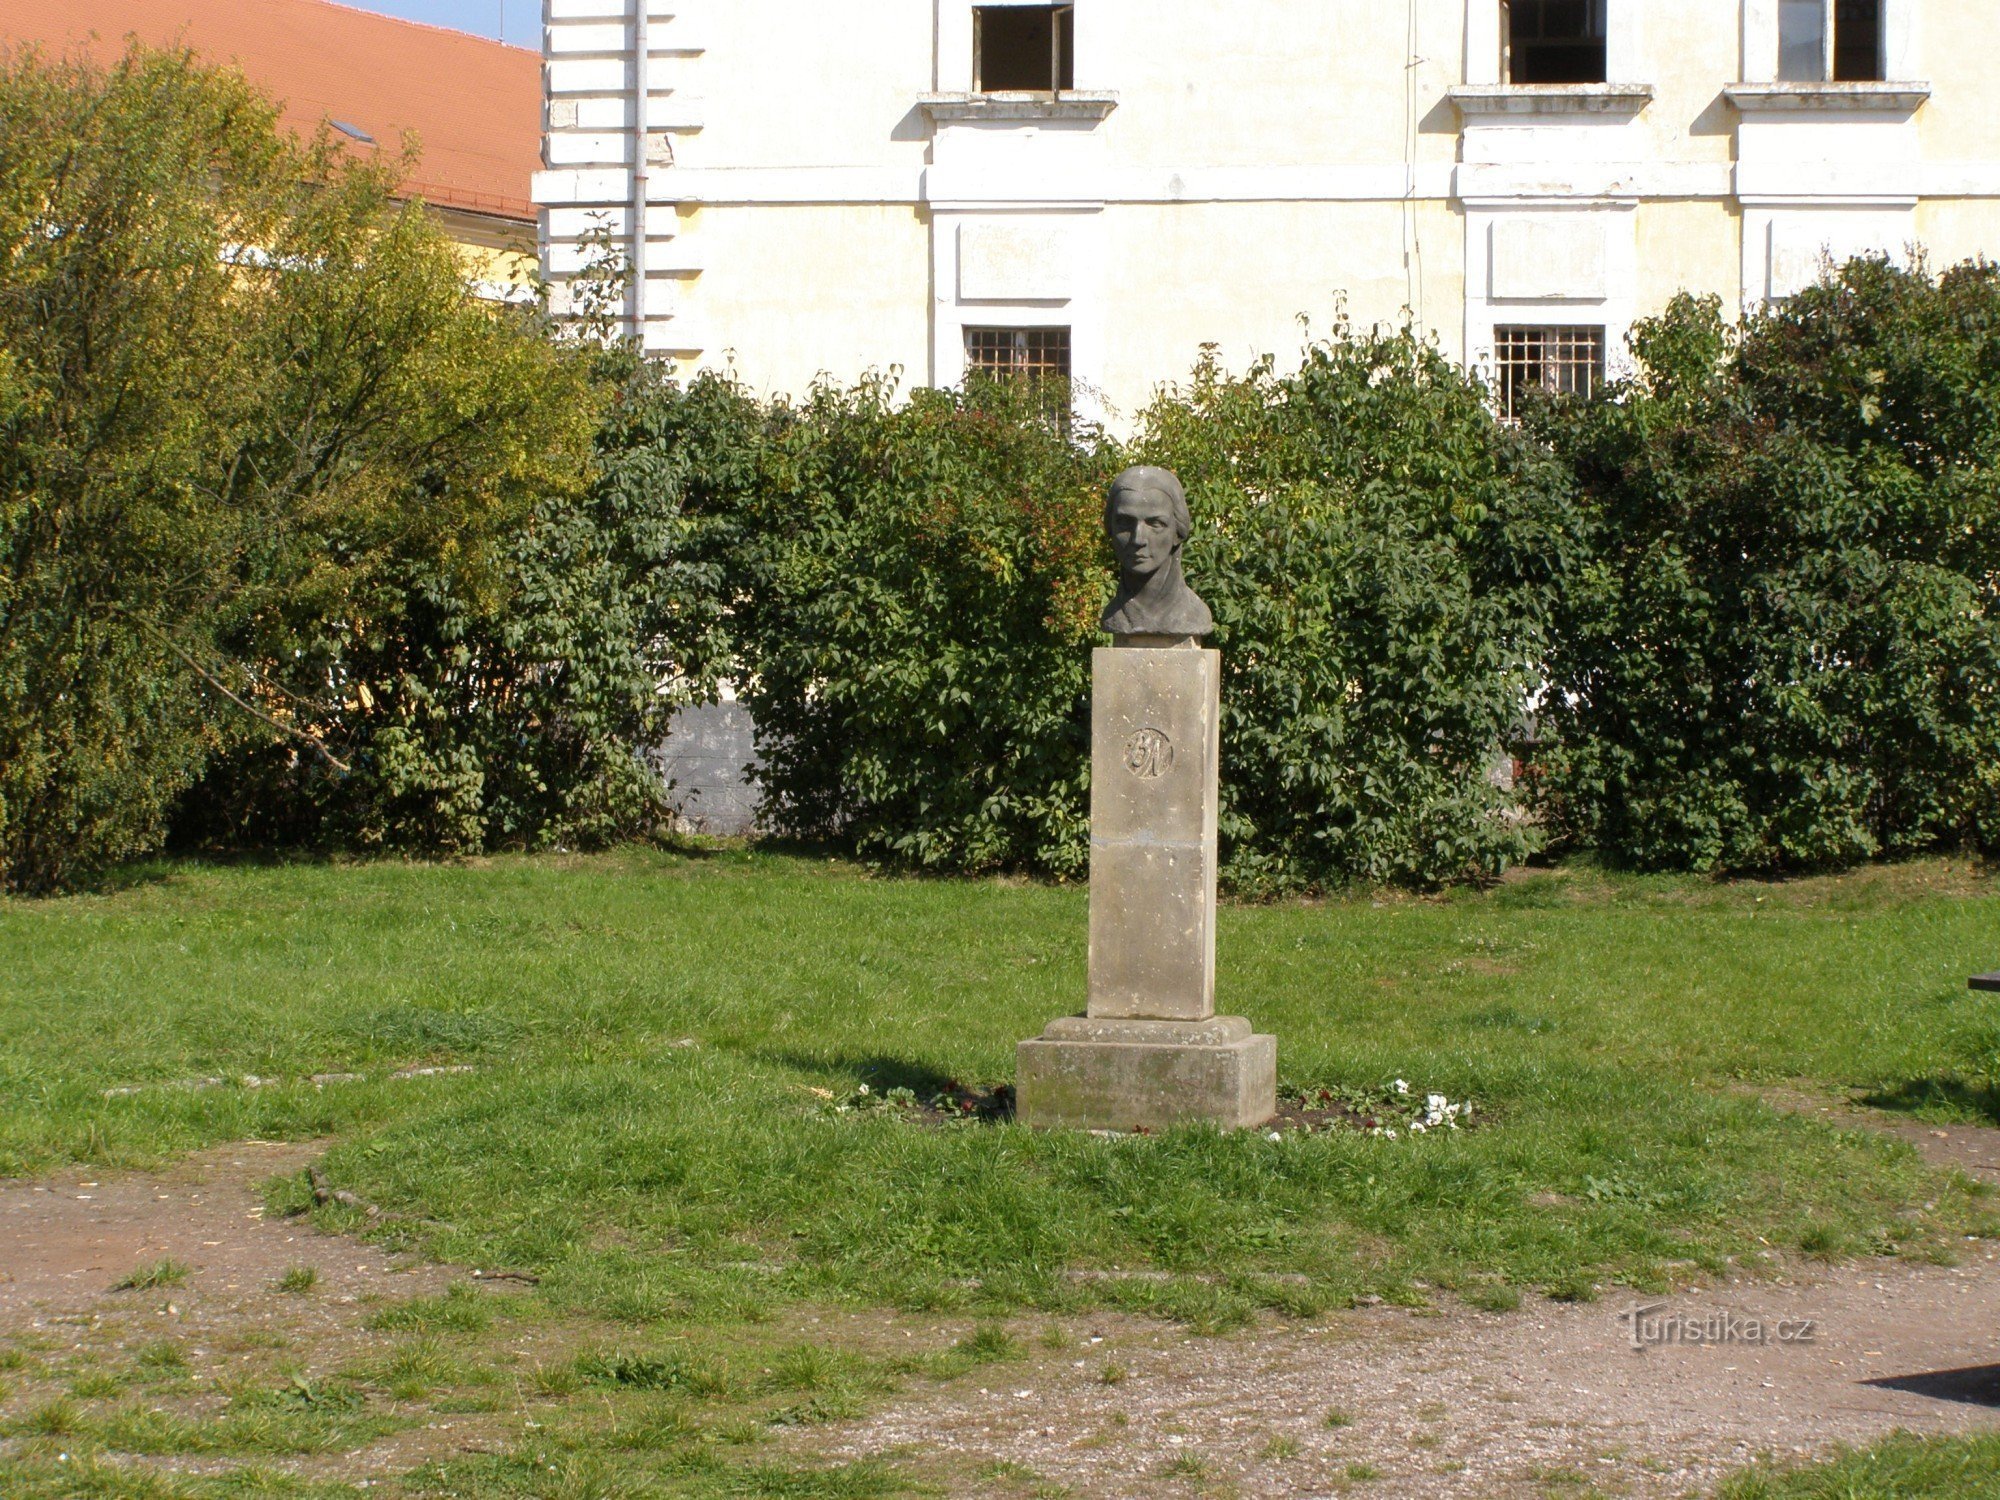 Josefov - monumentul lui Bozena Němcová